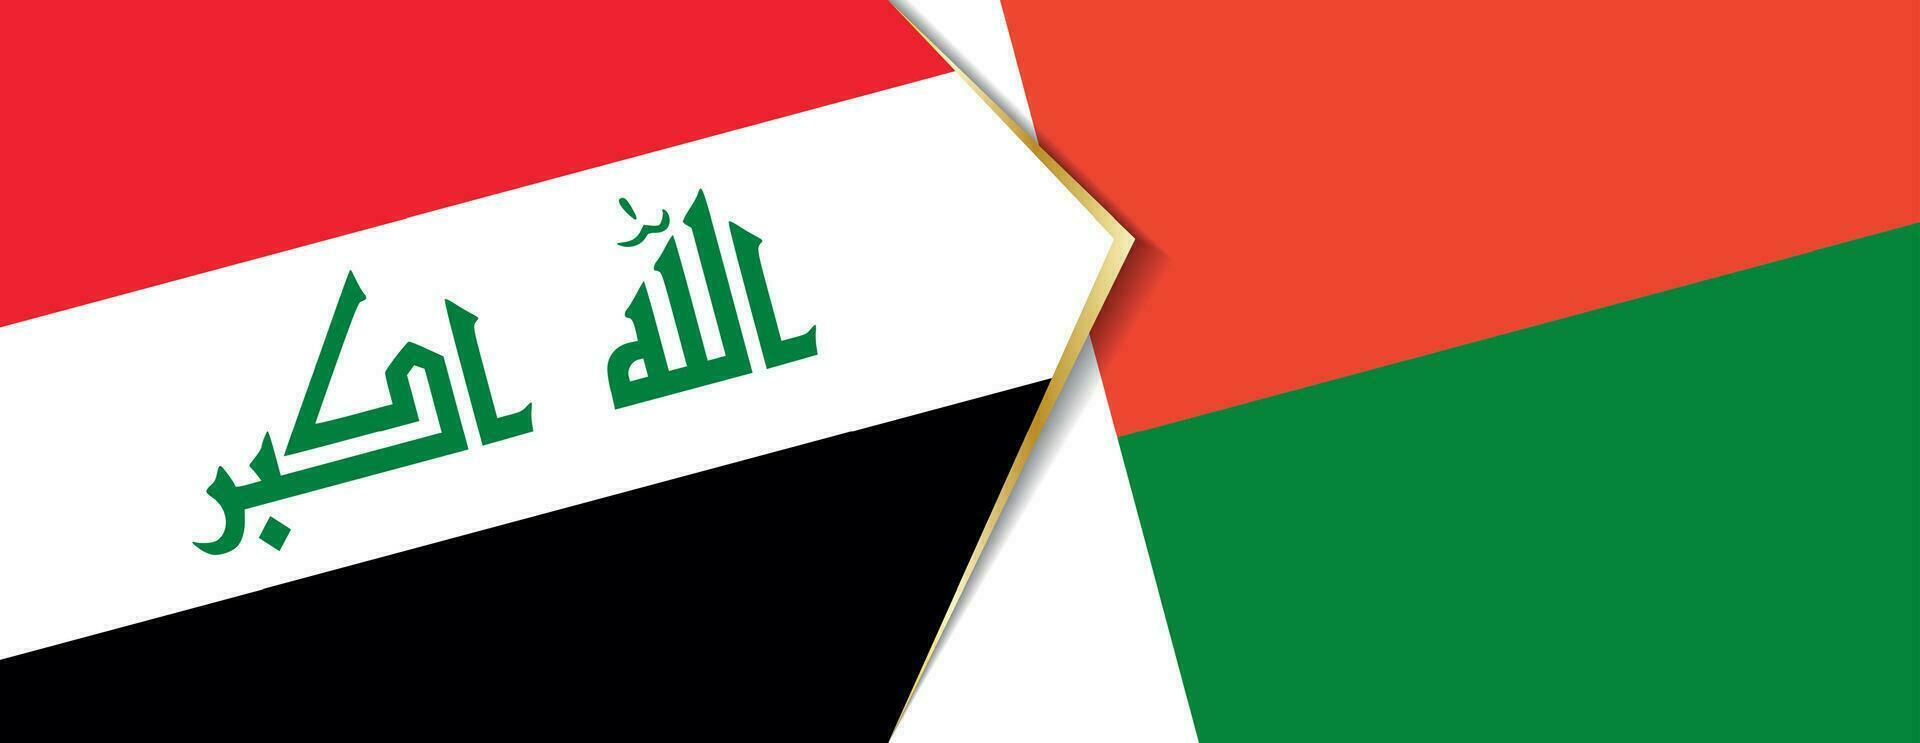 Iraque e Madagáscar bandeiras, dois vetor bandeiras.